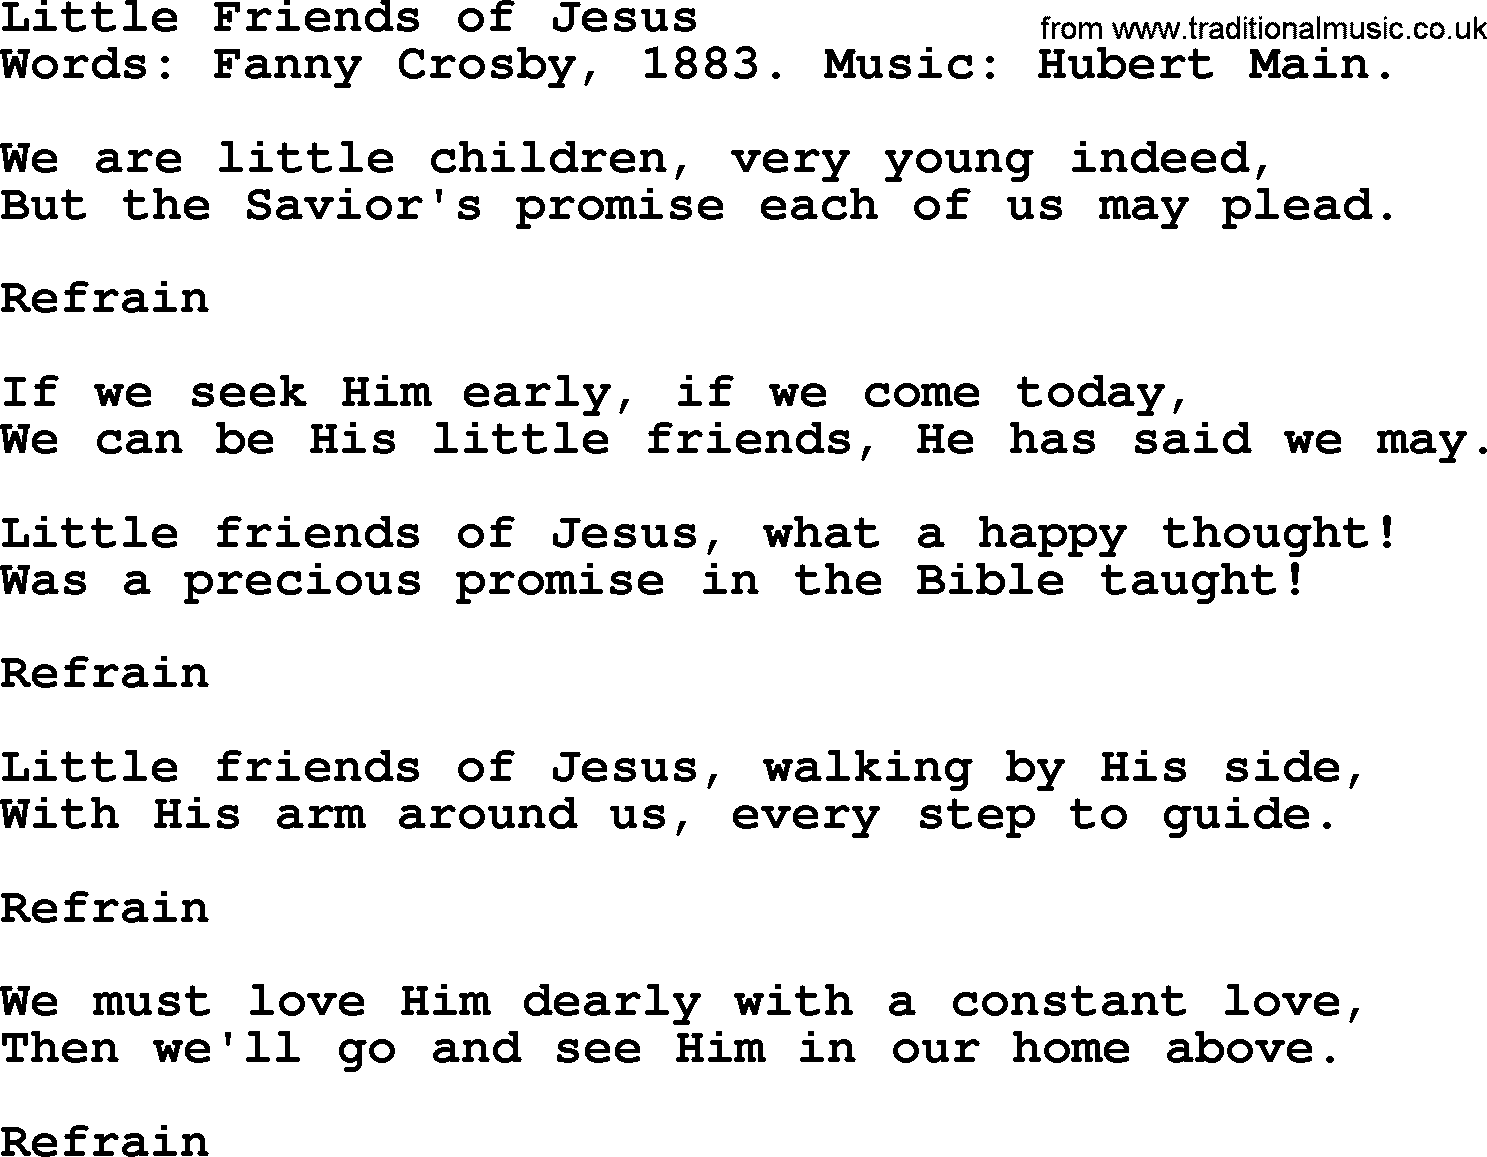 Fanny Crosby song: Little Friends Of Jesus, lyrics